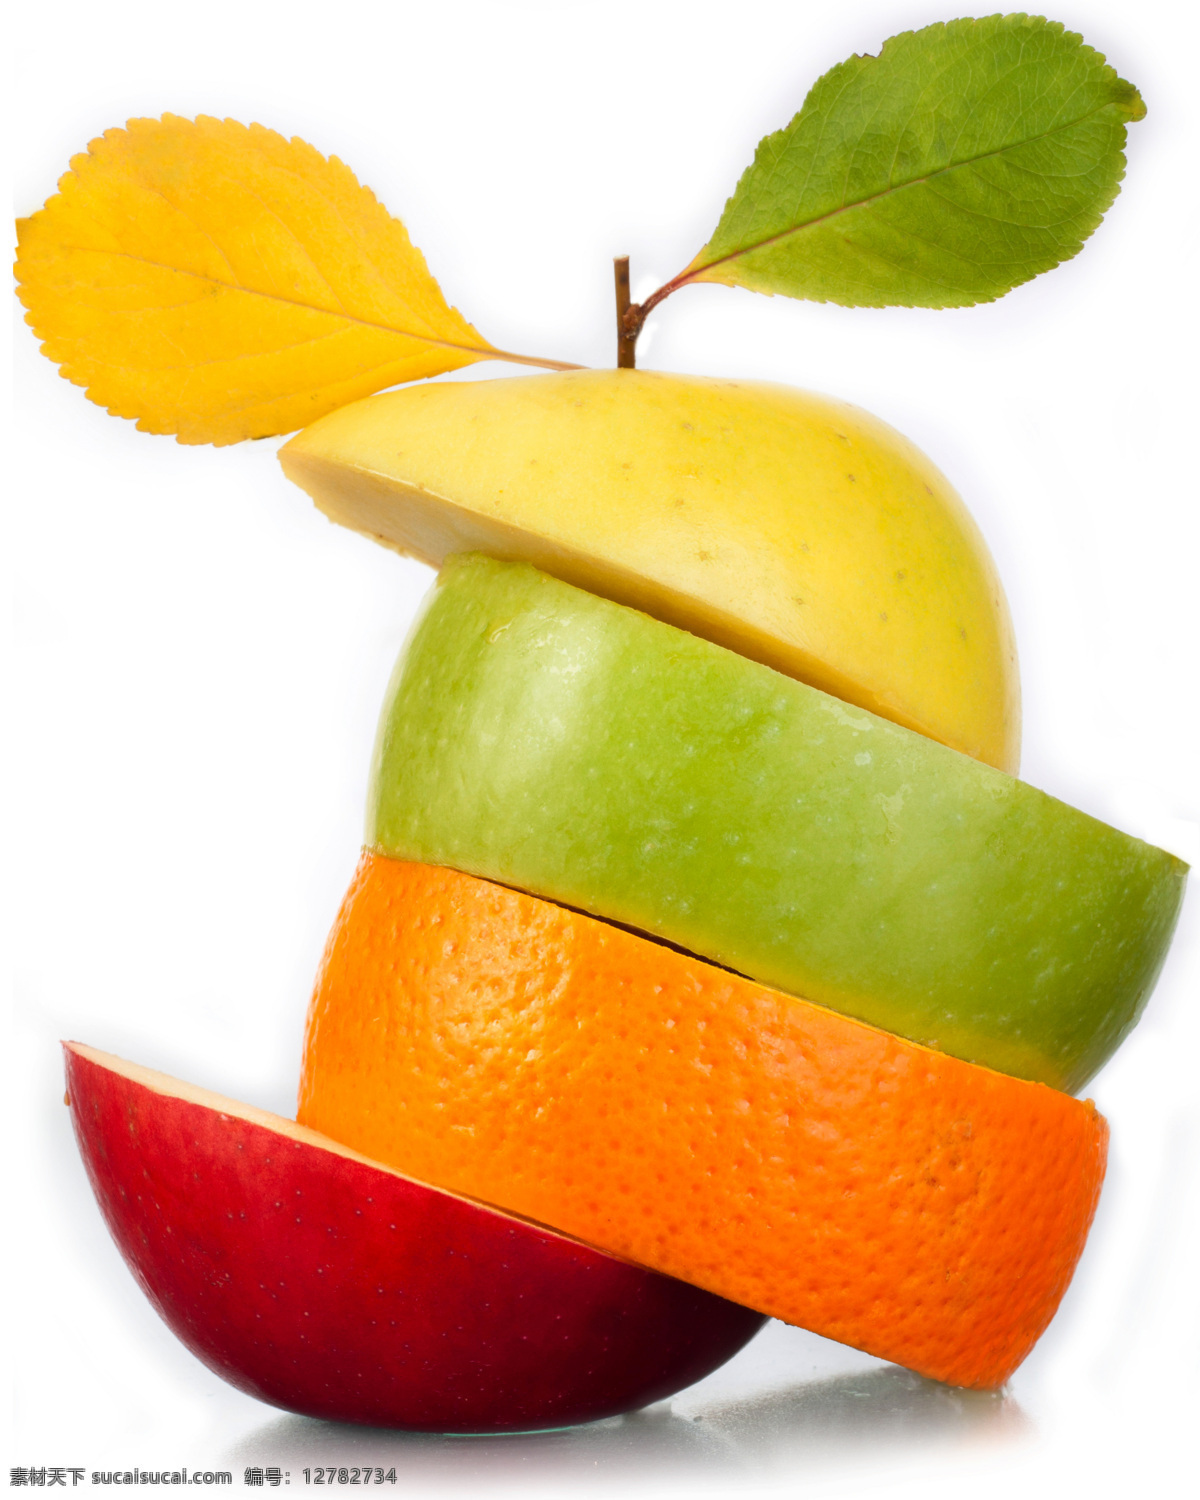 水果 创意 合成 高清 大图 苹果 青苹果 红苹果 创意合成 斜切 橙子 设计素材 高清大图 海报 水果图片 餐饮美食